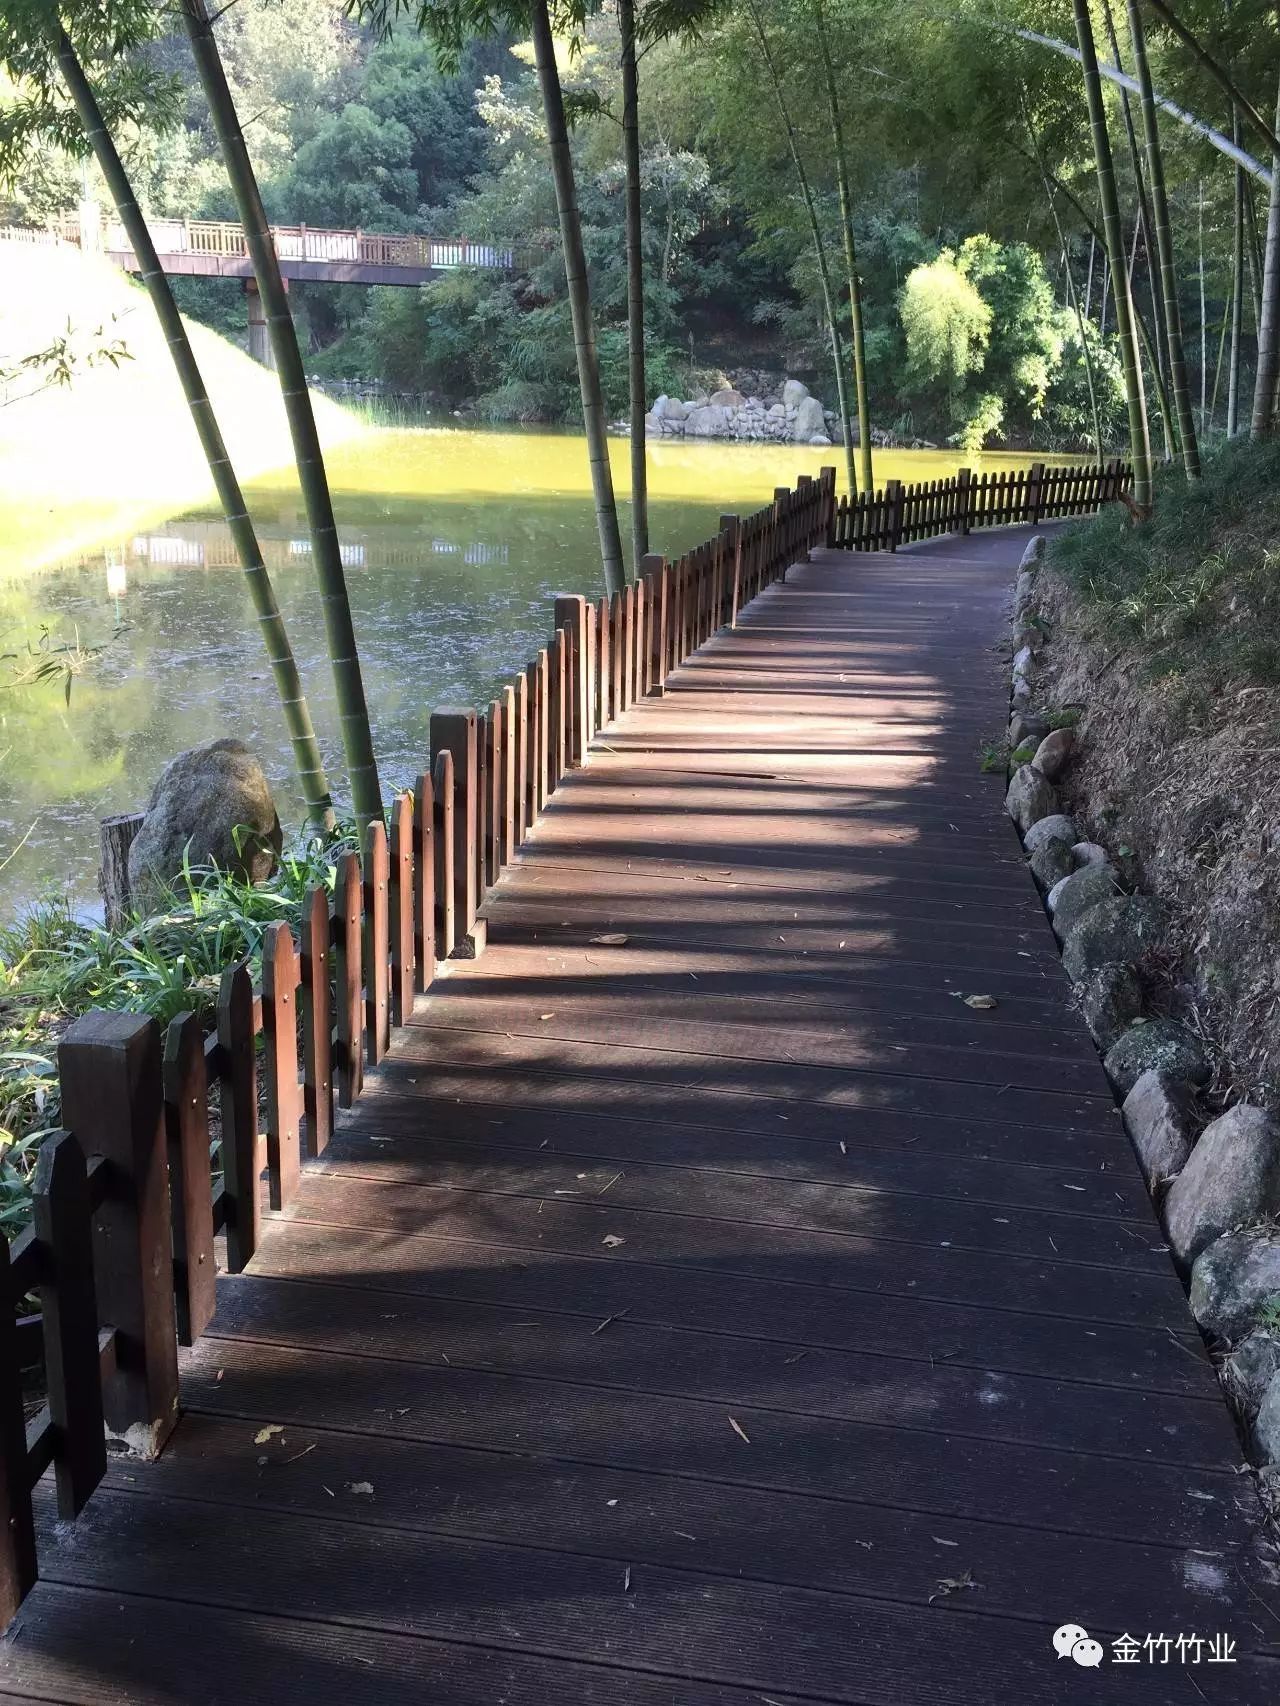 万竹山公园位于竹具城附近,依山而建,青山绿水环绕,环境优美,种植有